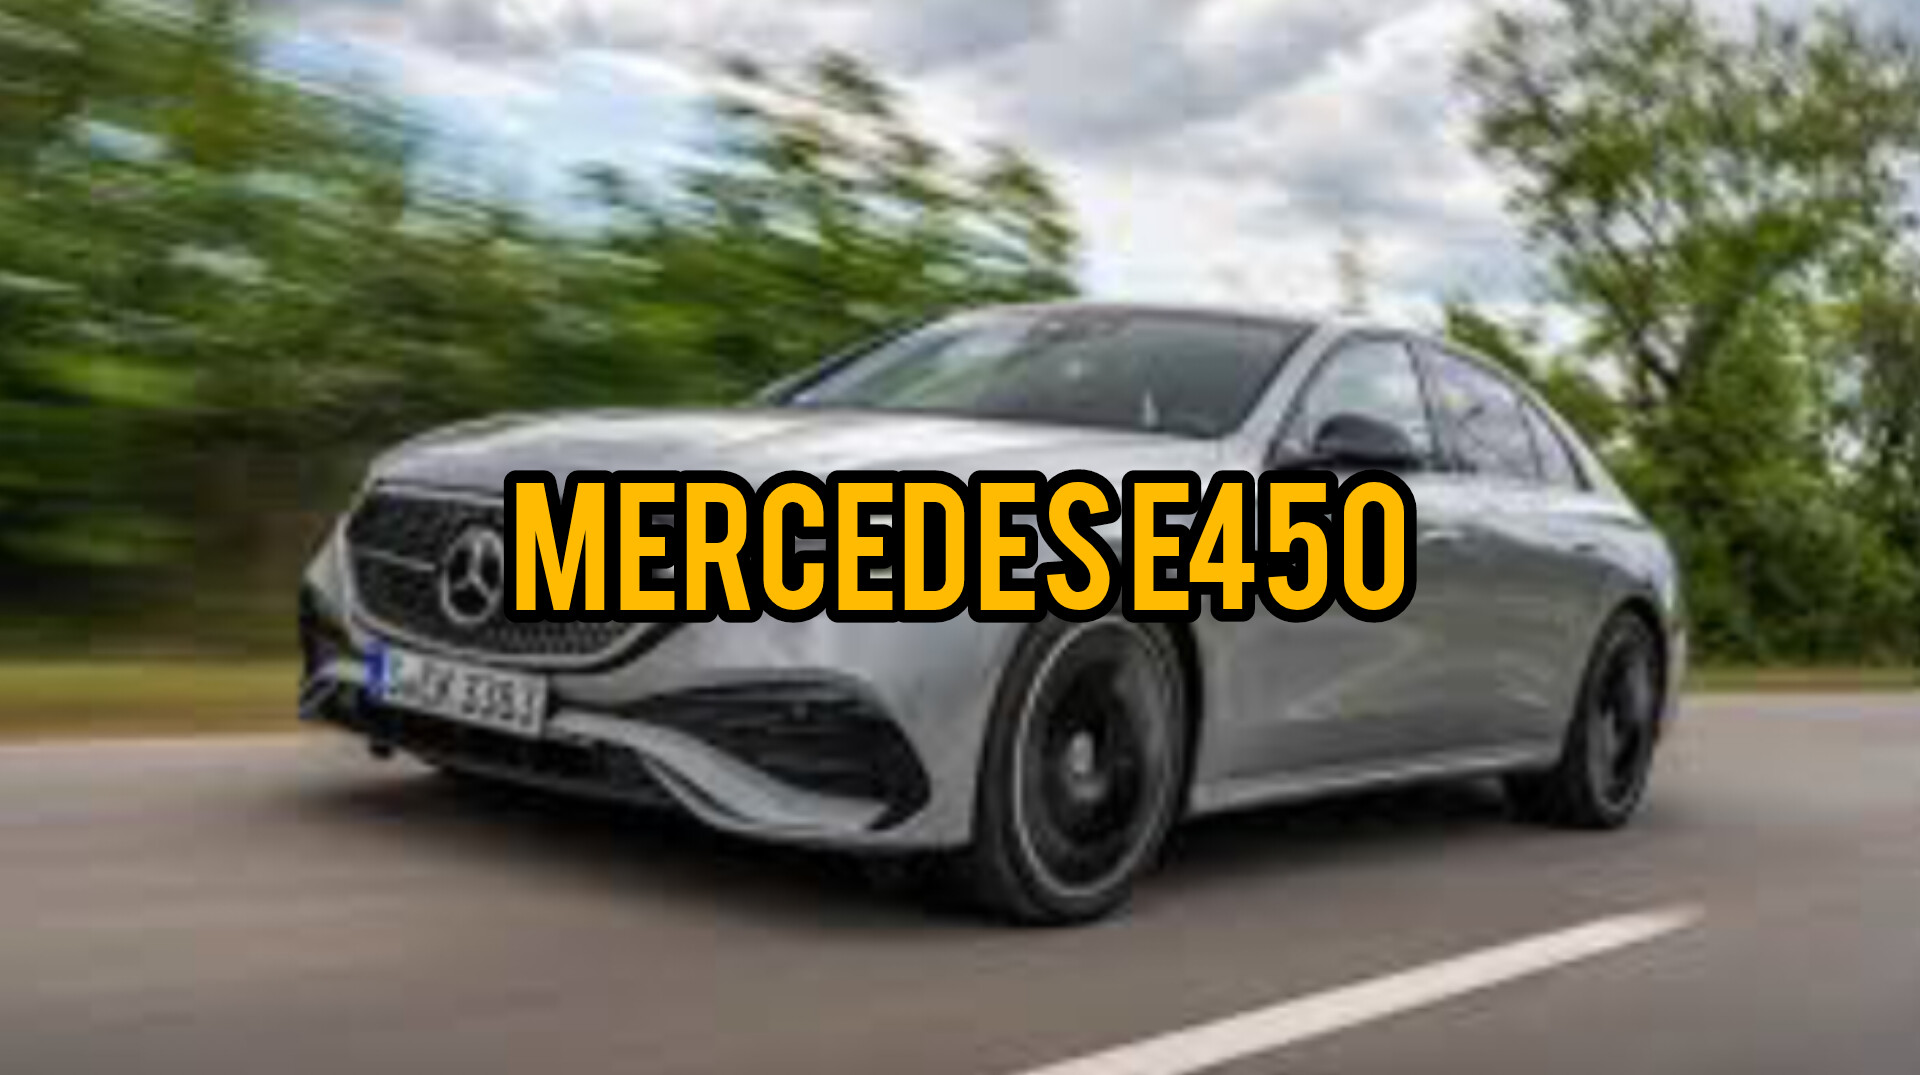 Mercedes-Benz Umumkan Harga SUV Baru E450 Seharga Rp 1 Miliar, Berikut Keunggulannya